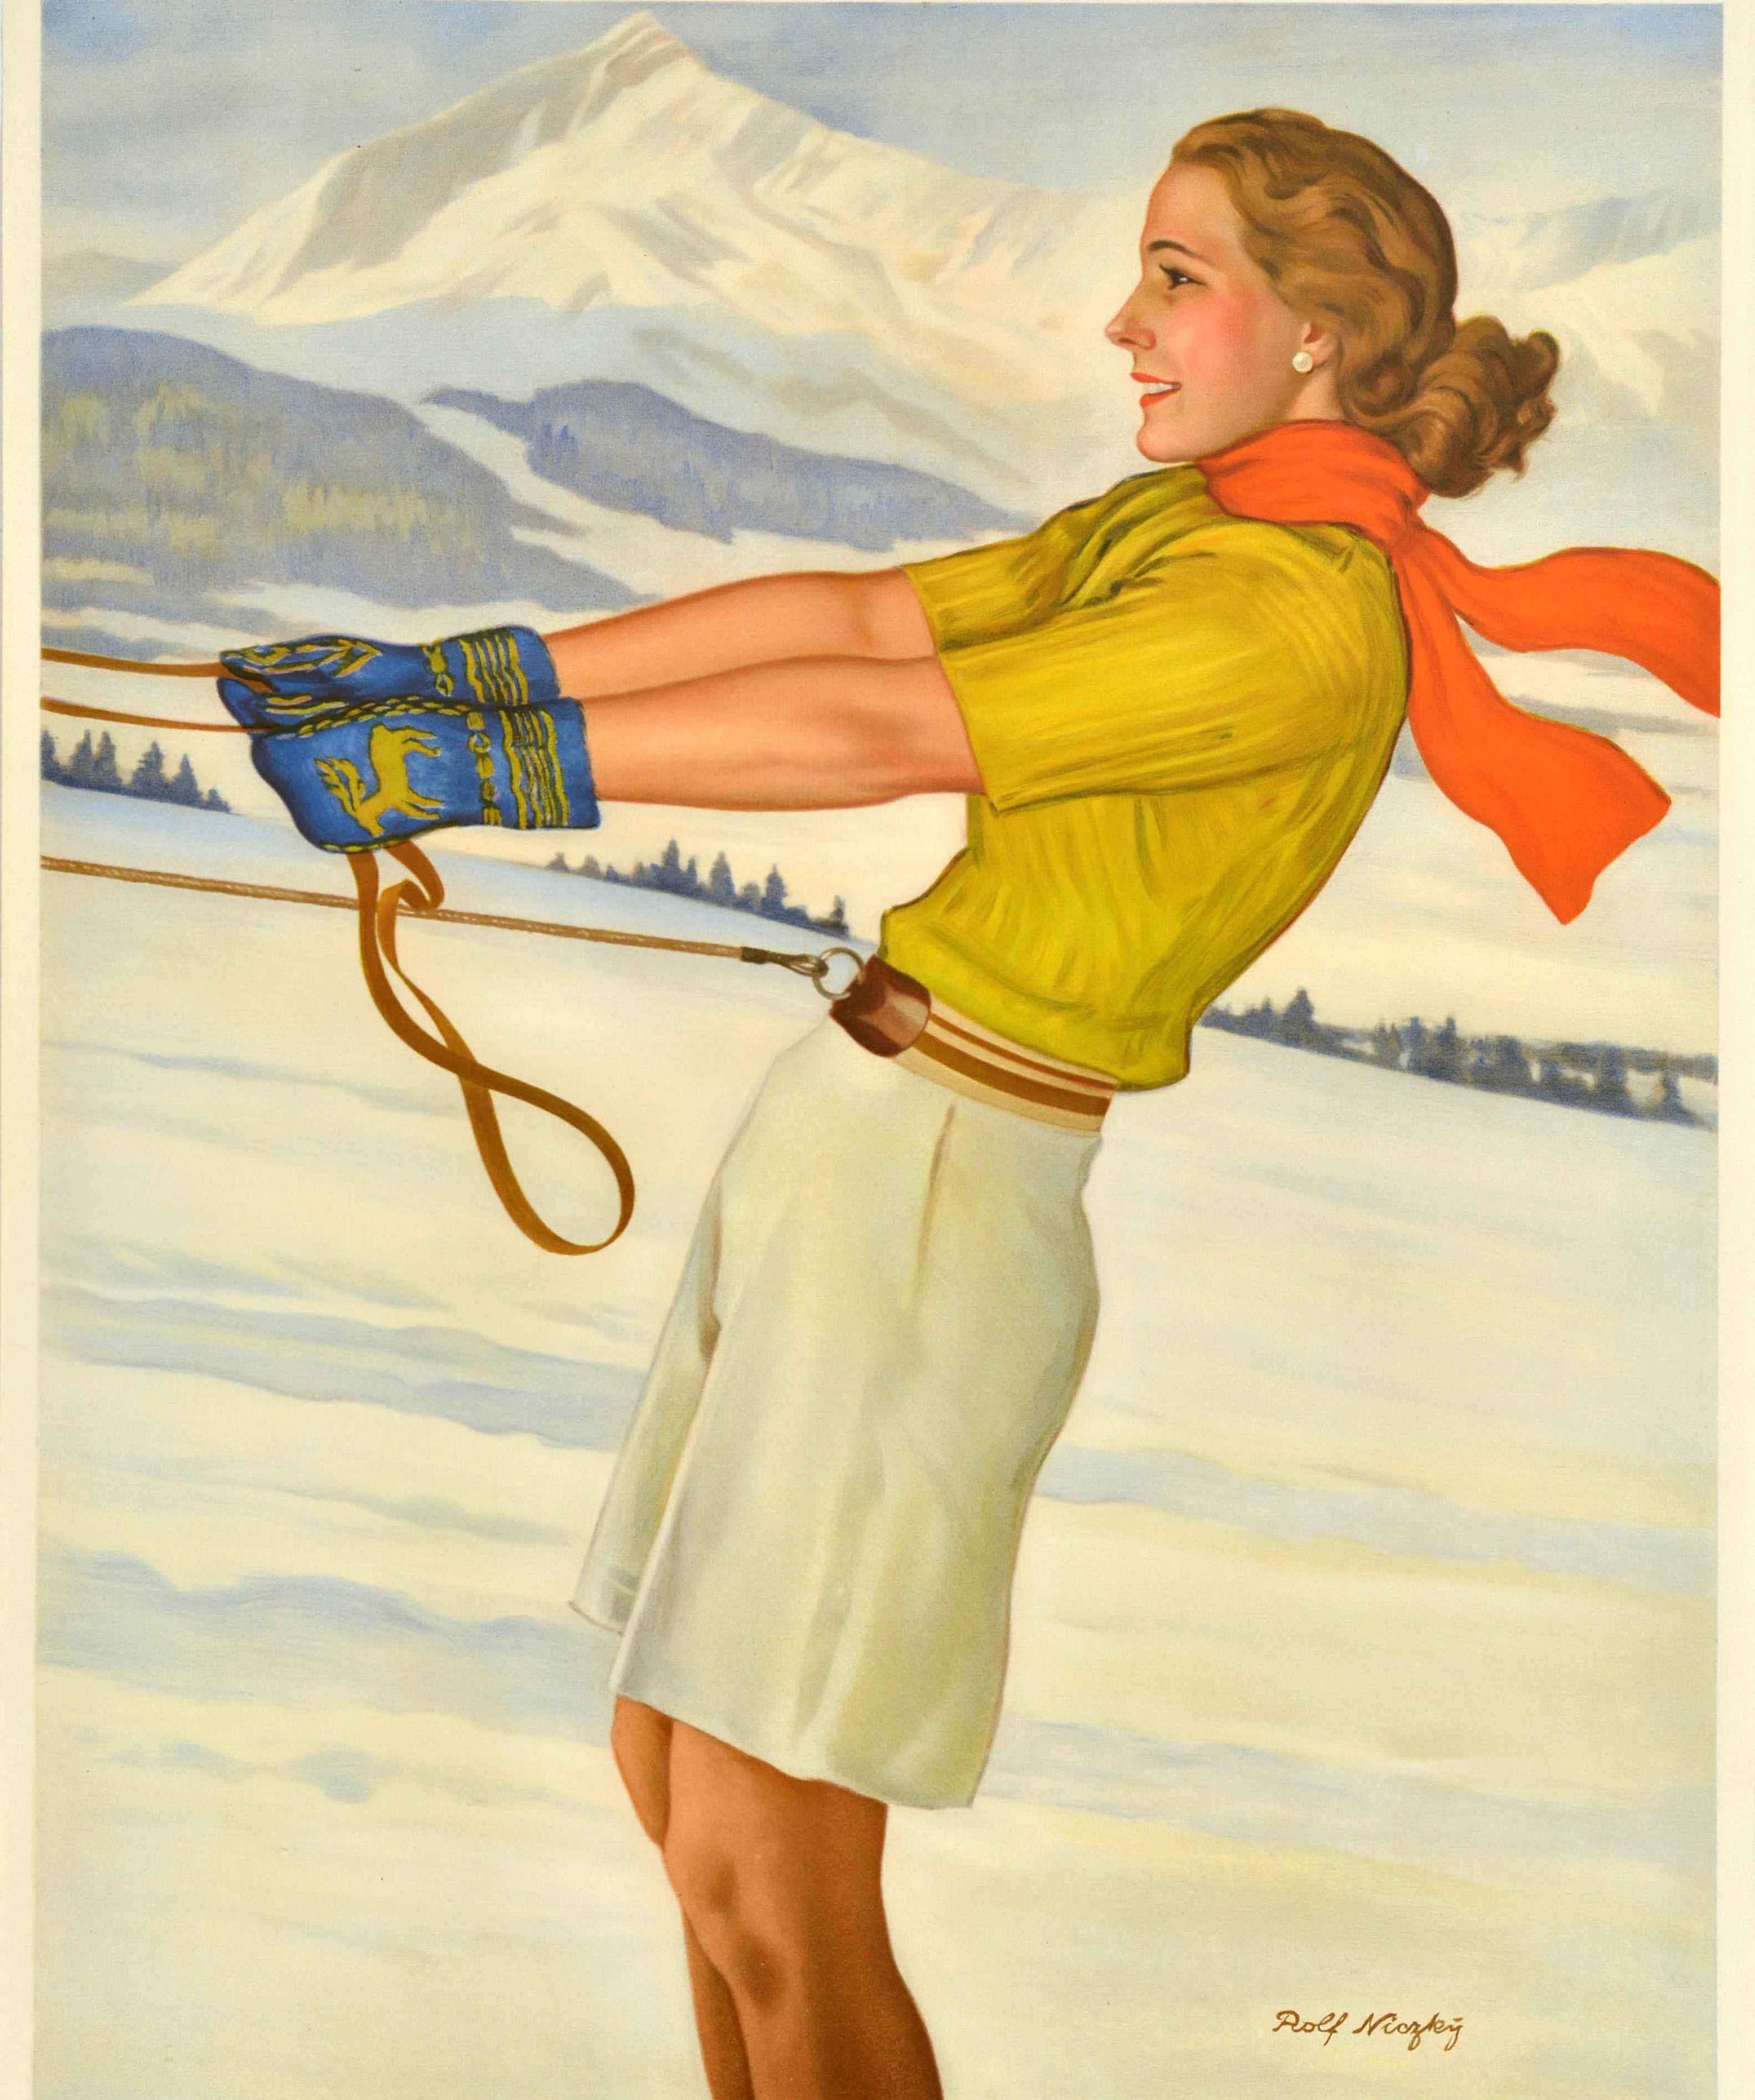 Original Vintage Travel Poster Garmisch Partenkirchen Winter Sport Health Skiing In Good Condition For Sale In London, GB